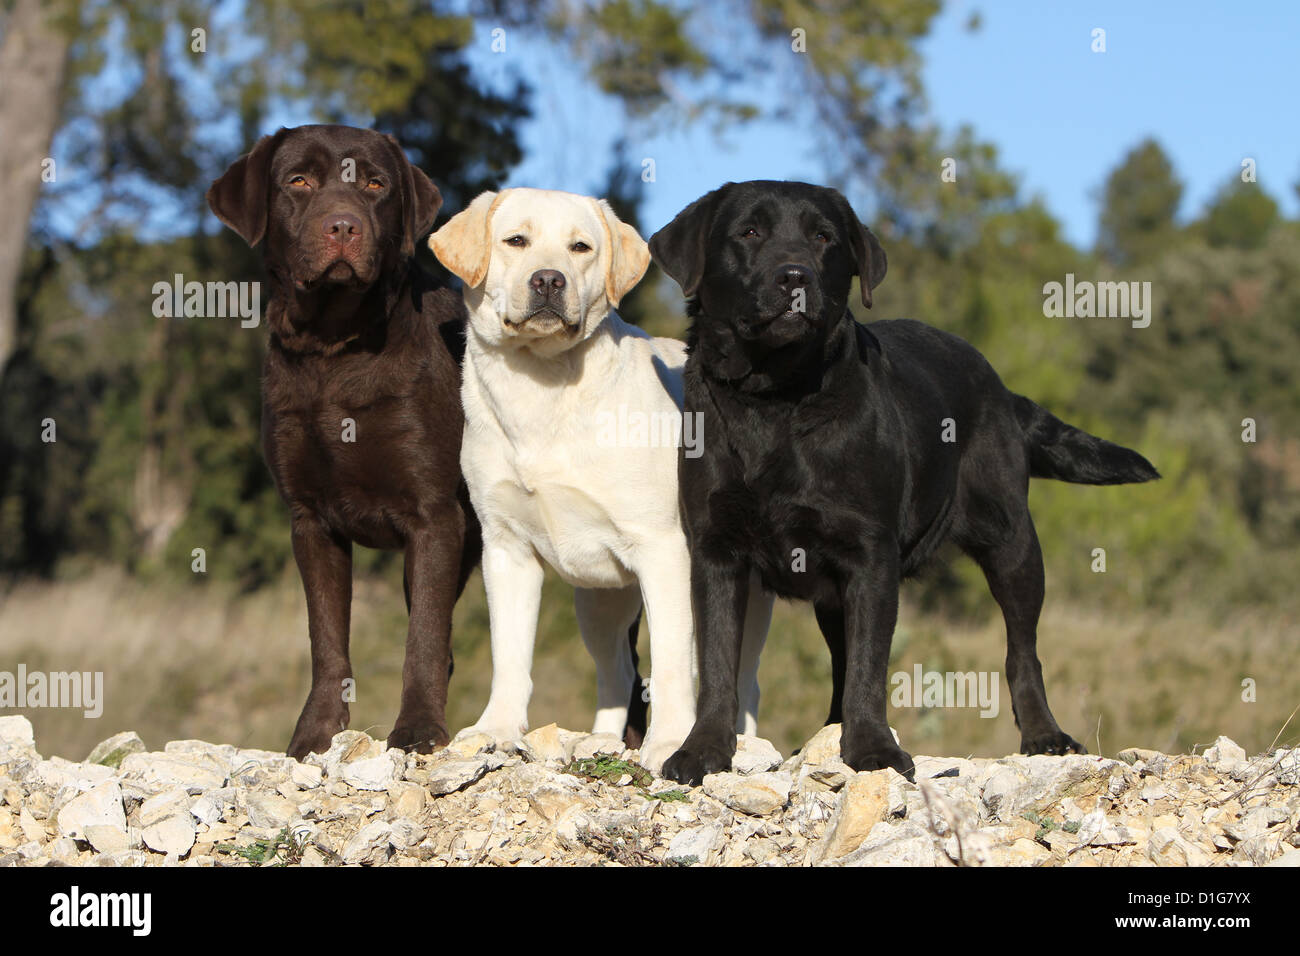 Hund Labrador Retriever drei Erwachsene verschiedene Farben (Schokolade, gelb und schwarz) stehen an einer Wand Stockfoto